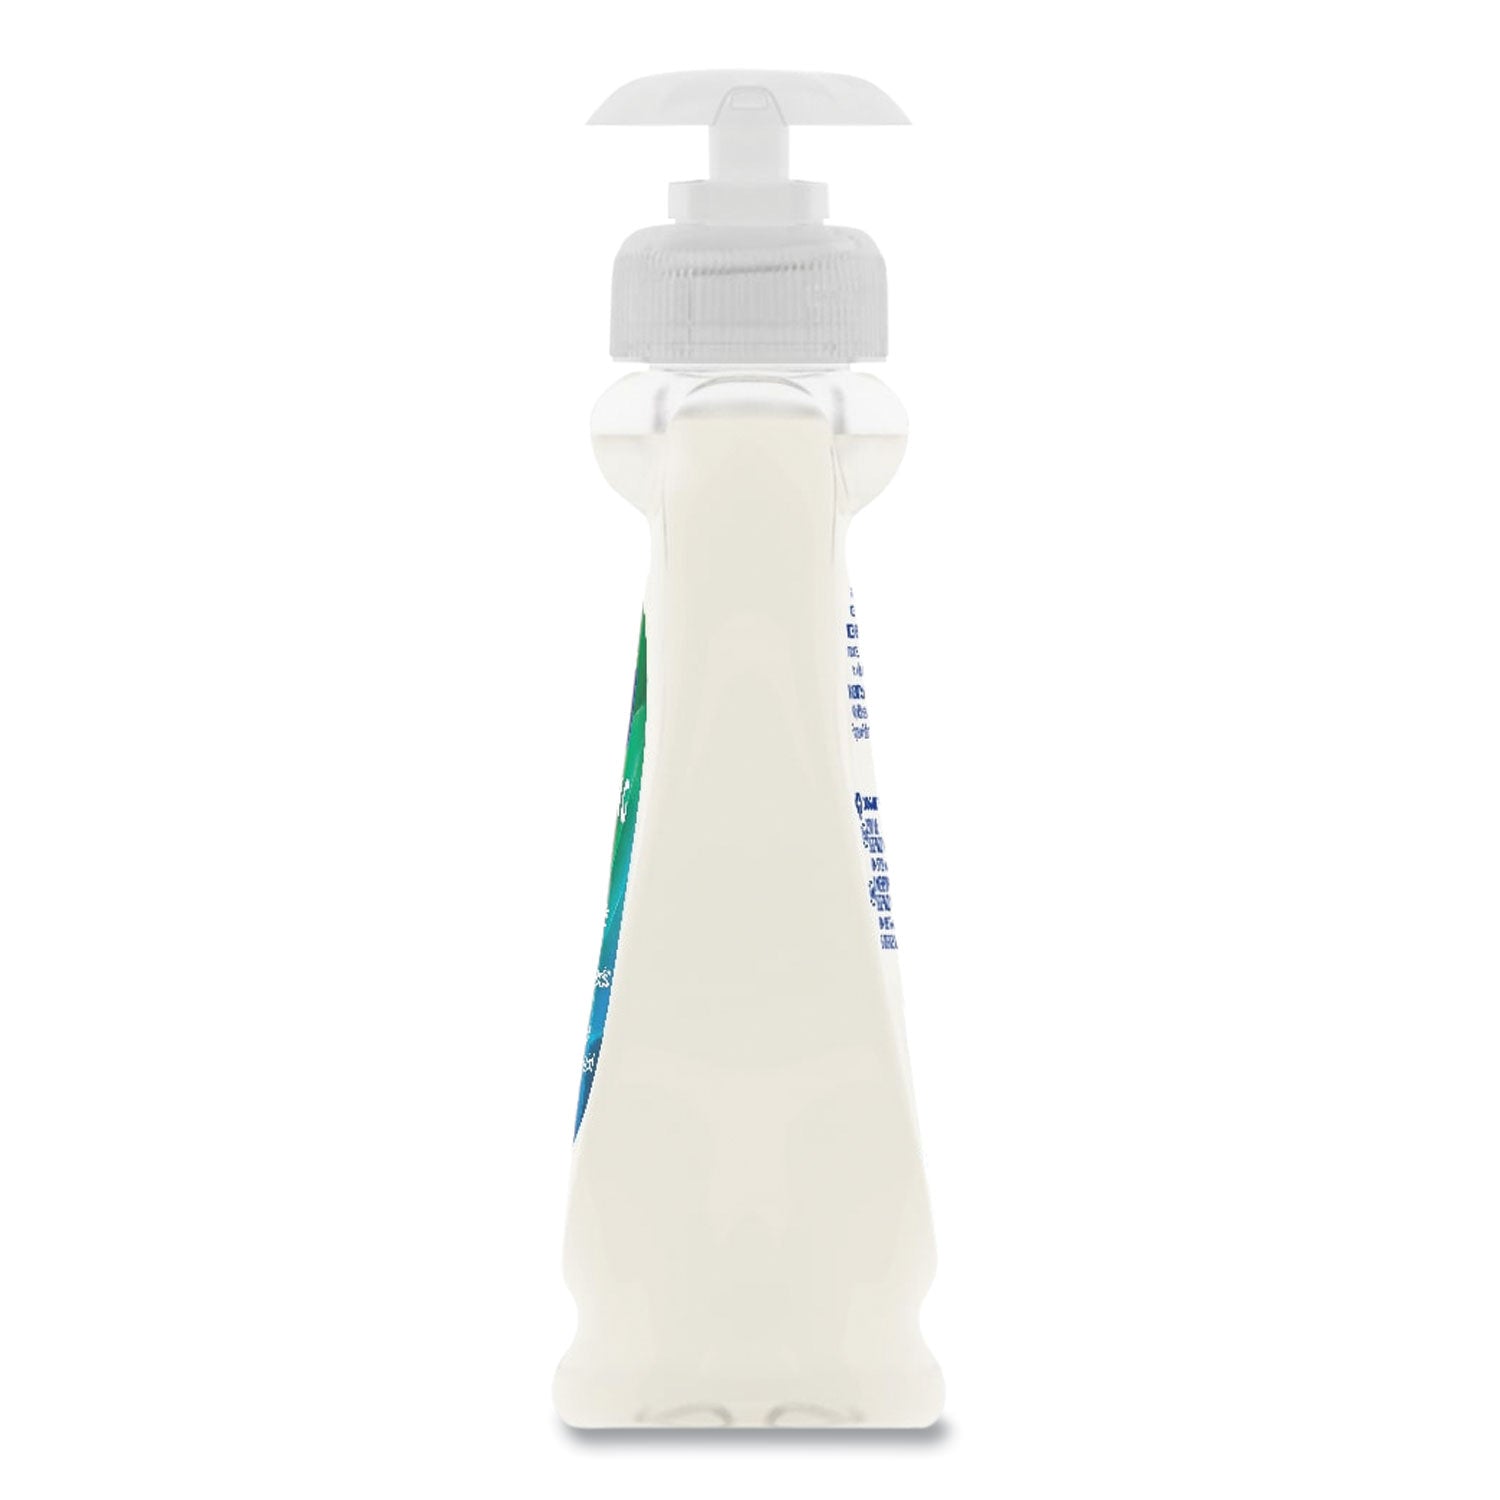 Liquid Hand Soap Pump with Aloe, Clean Fresh 7.5 oz Bottle - 4